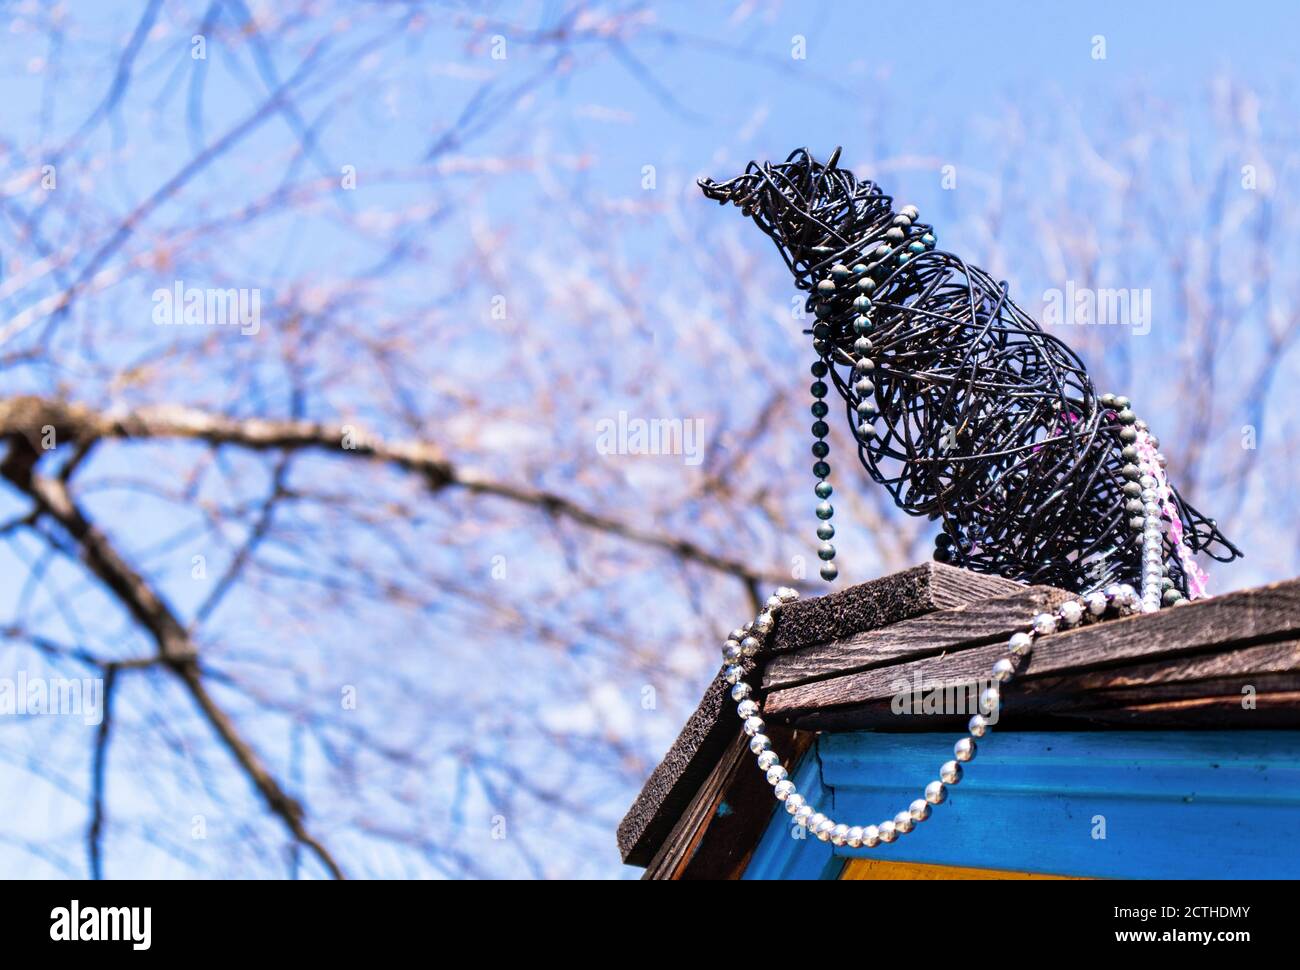 Corbeau, corbeau ou magpie fait main sur le toit. L'oiseau est fait de fil noir et de bijoux (collier de perles). Il est assis sur des bardeaux de toit avec du si bleu Banque D'Images